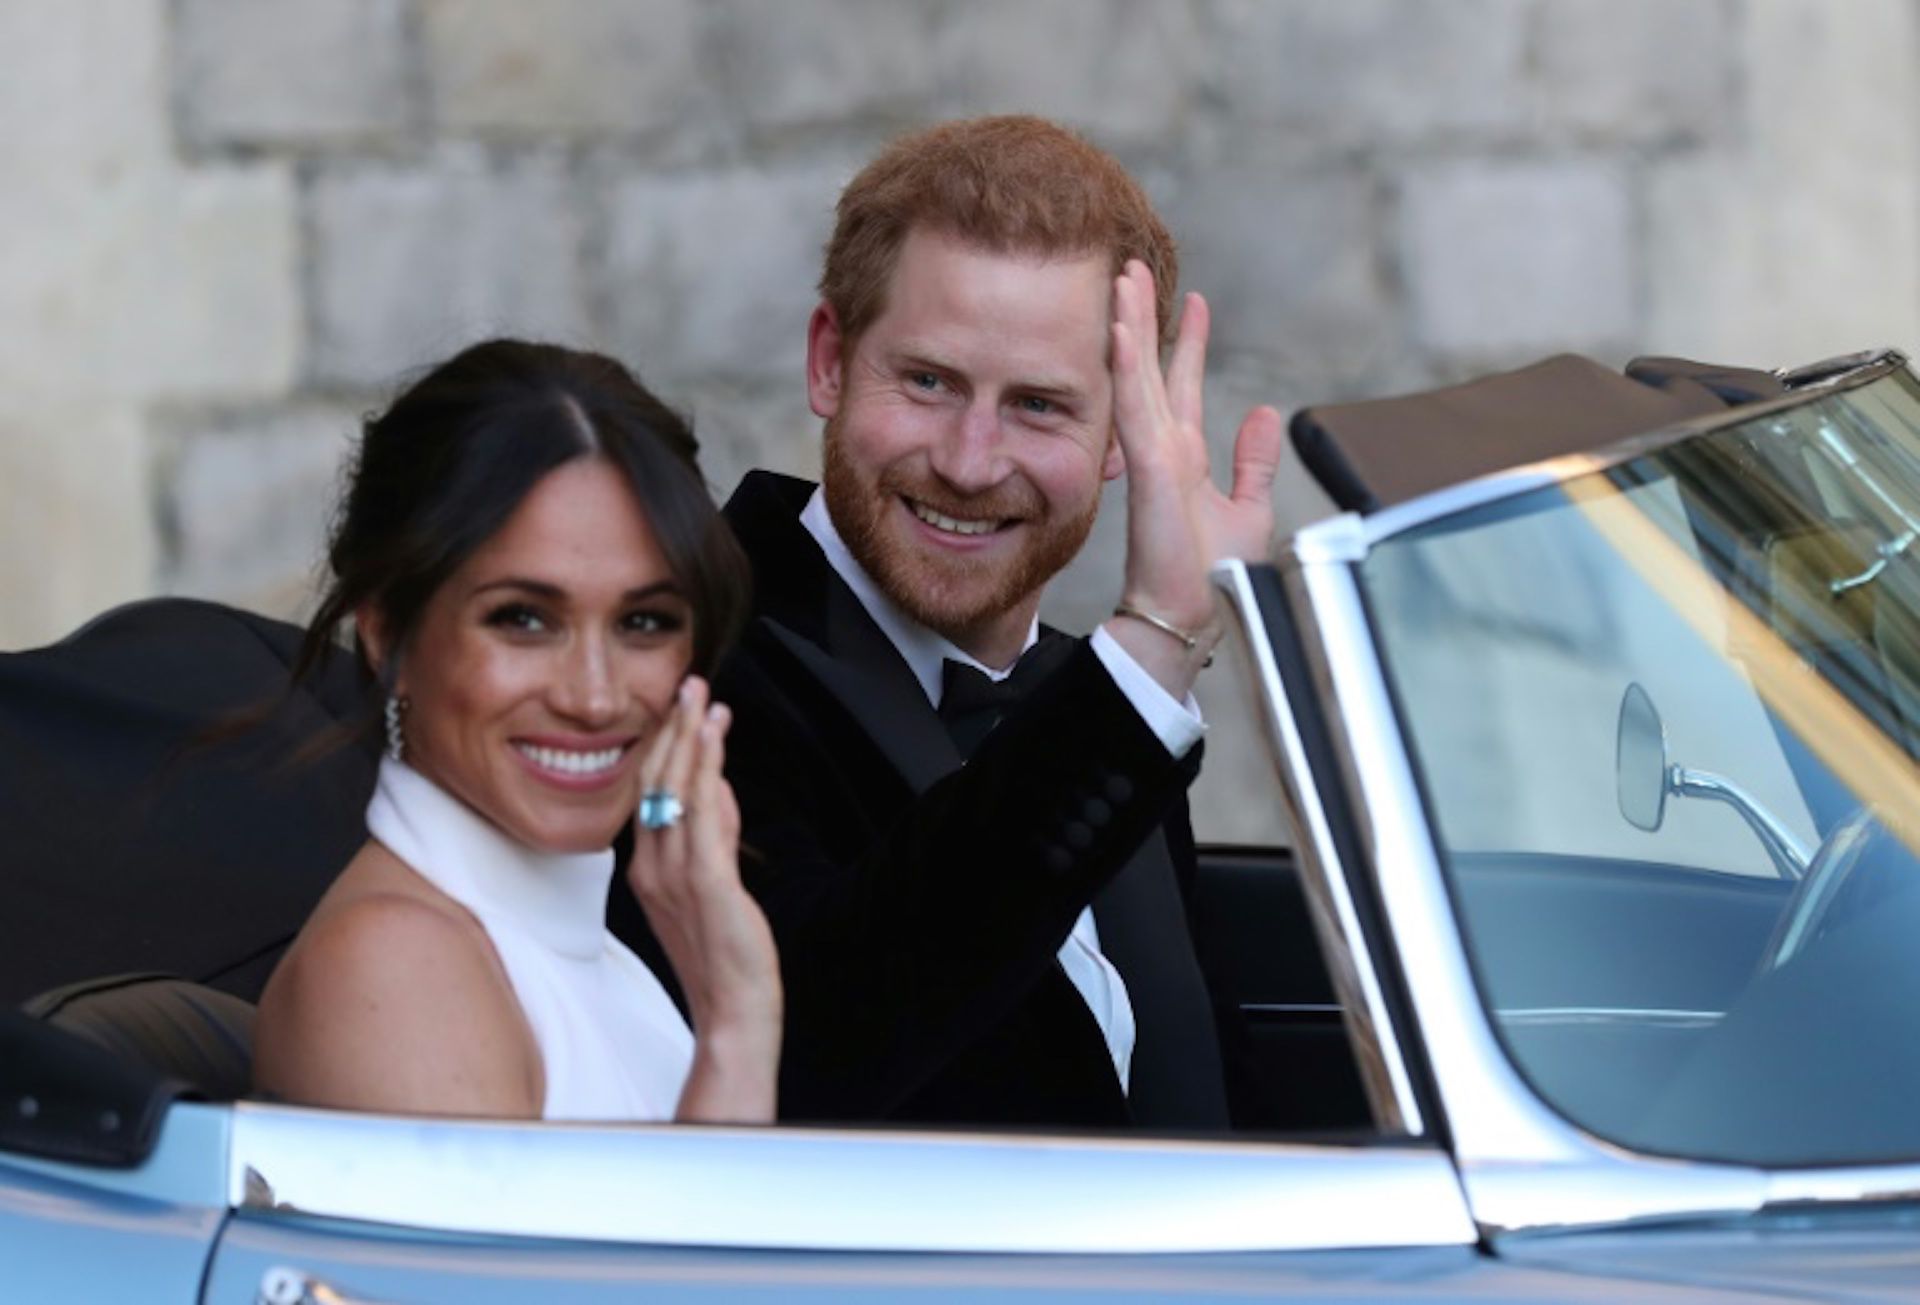 El príncipe Harry y su esposa Meghan Markle, duques de Sussex, abandonan el castillo en Windsor el 19 de mayo de 2018  para festejar su enlace en una recepción nocturna en Frogmore House